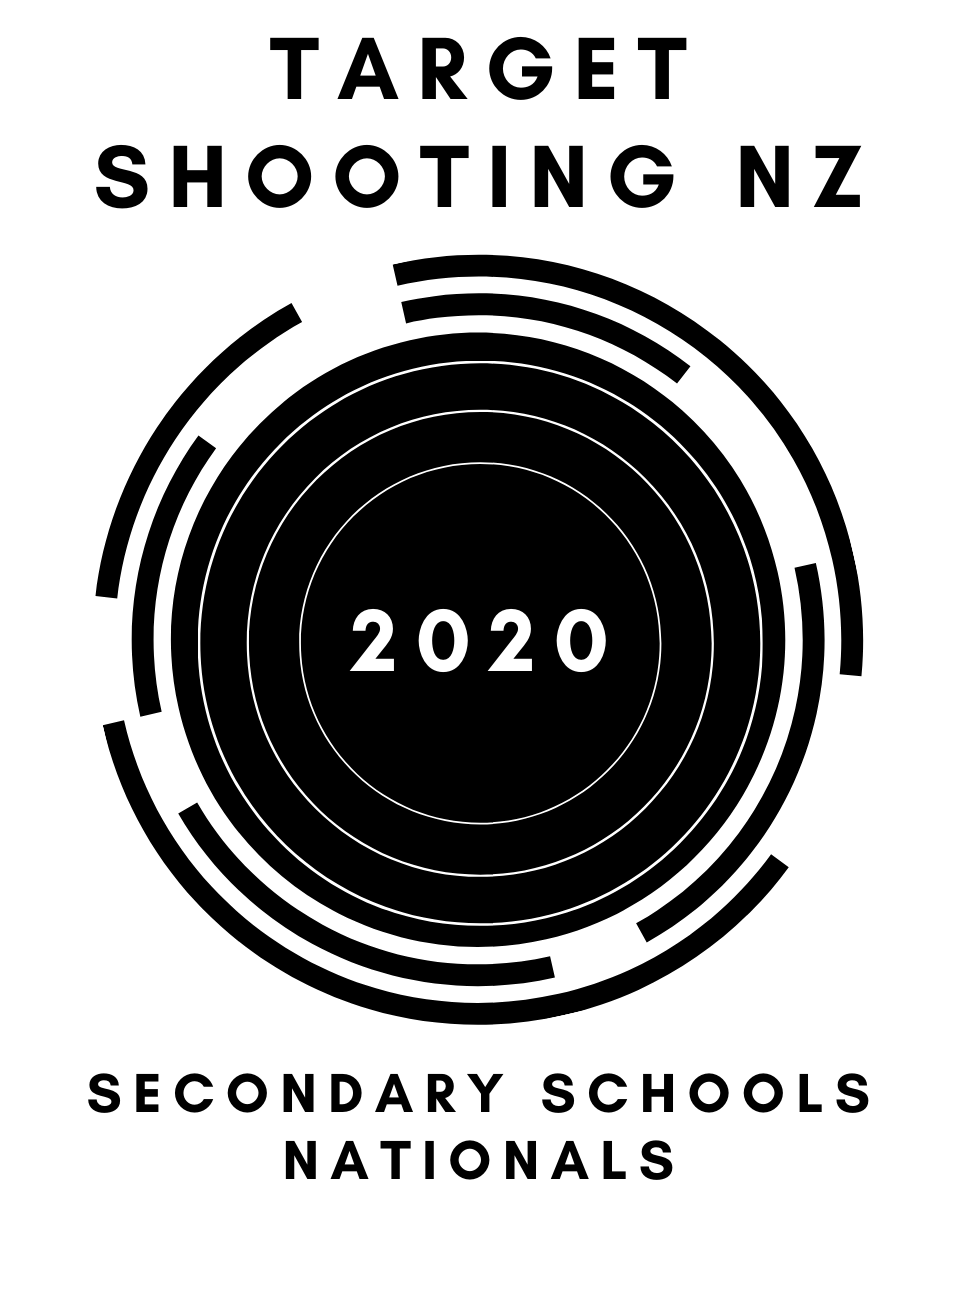 tsnz secondary schools logo 2020 _ narrow.png